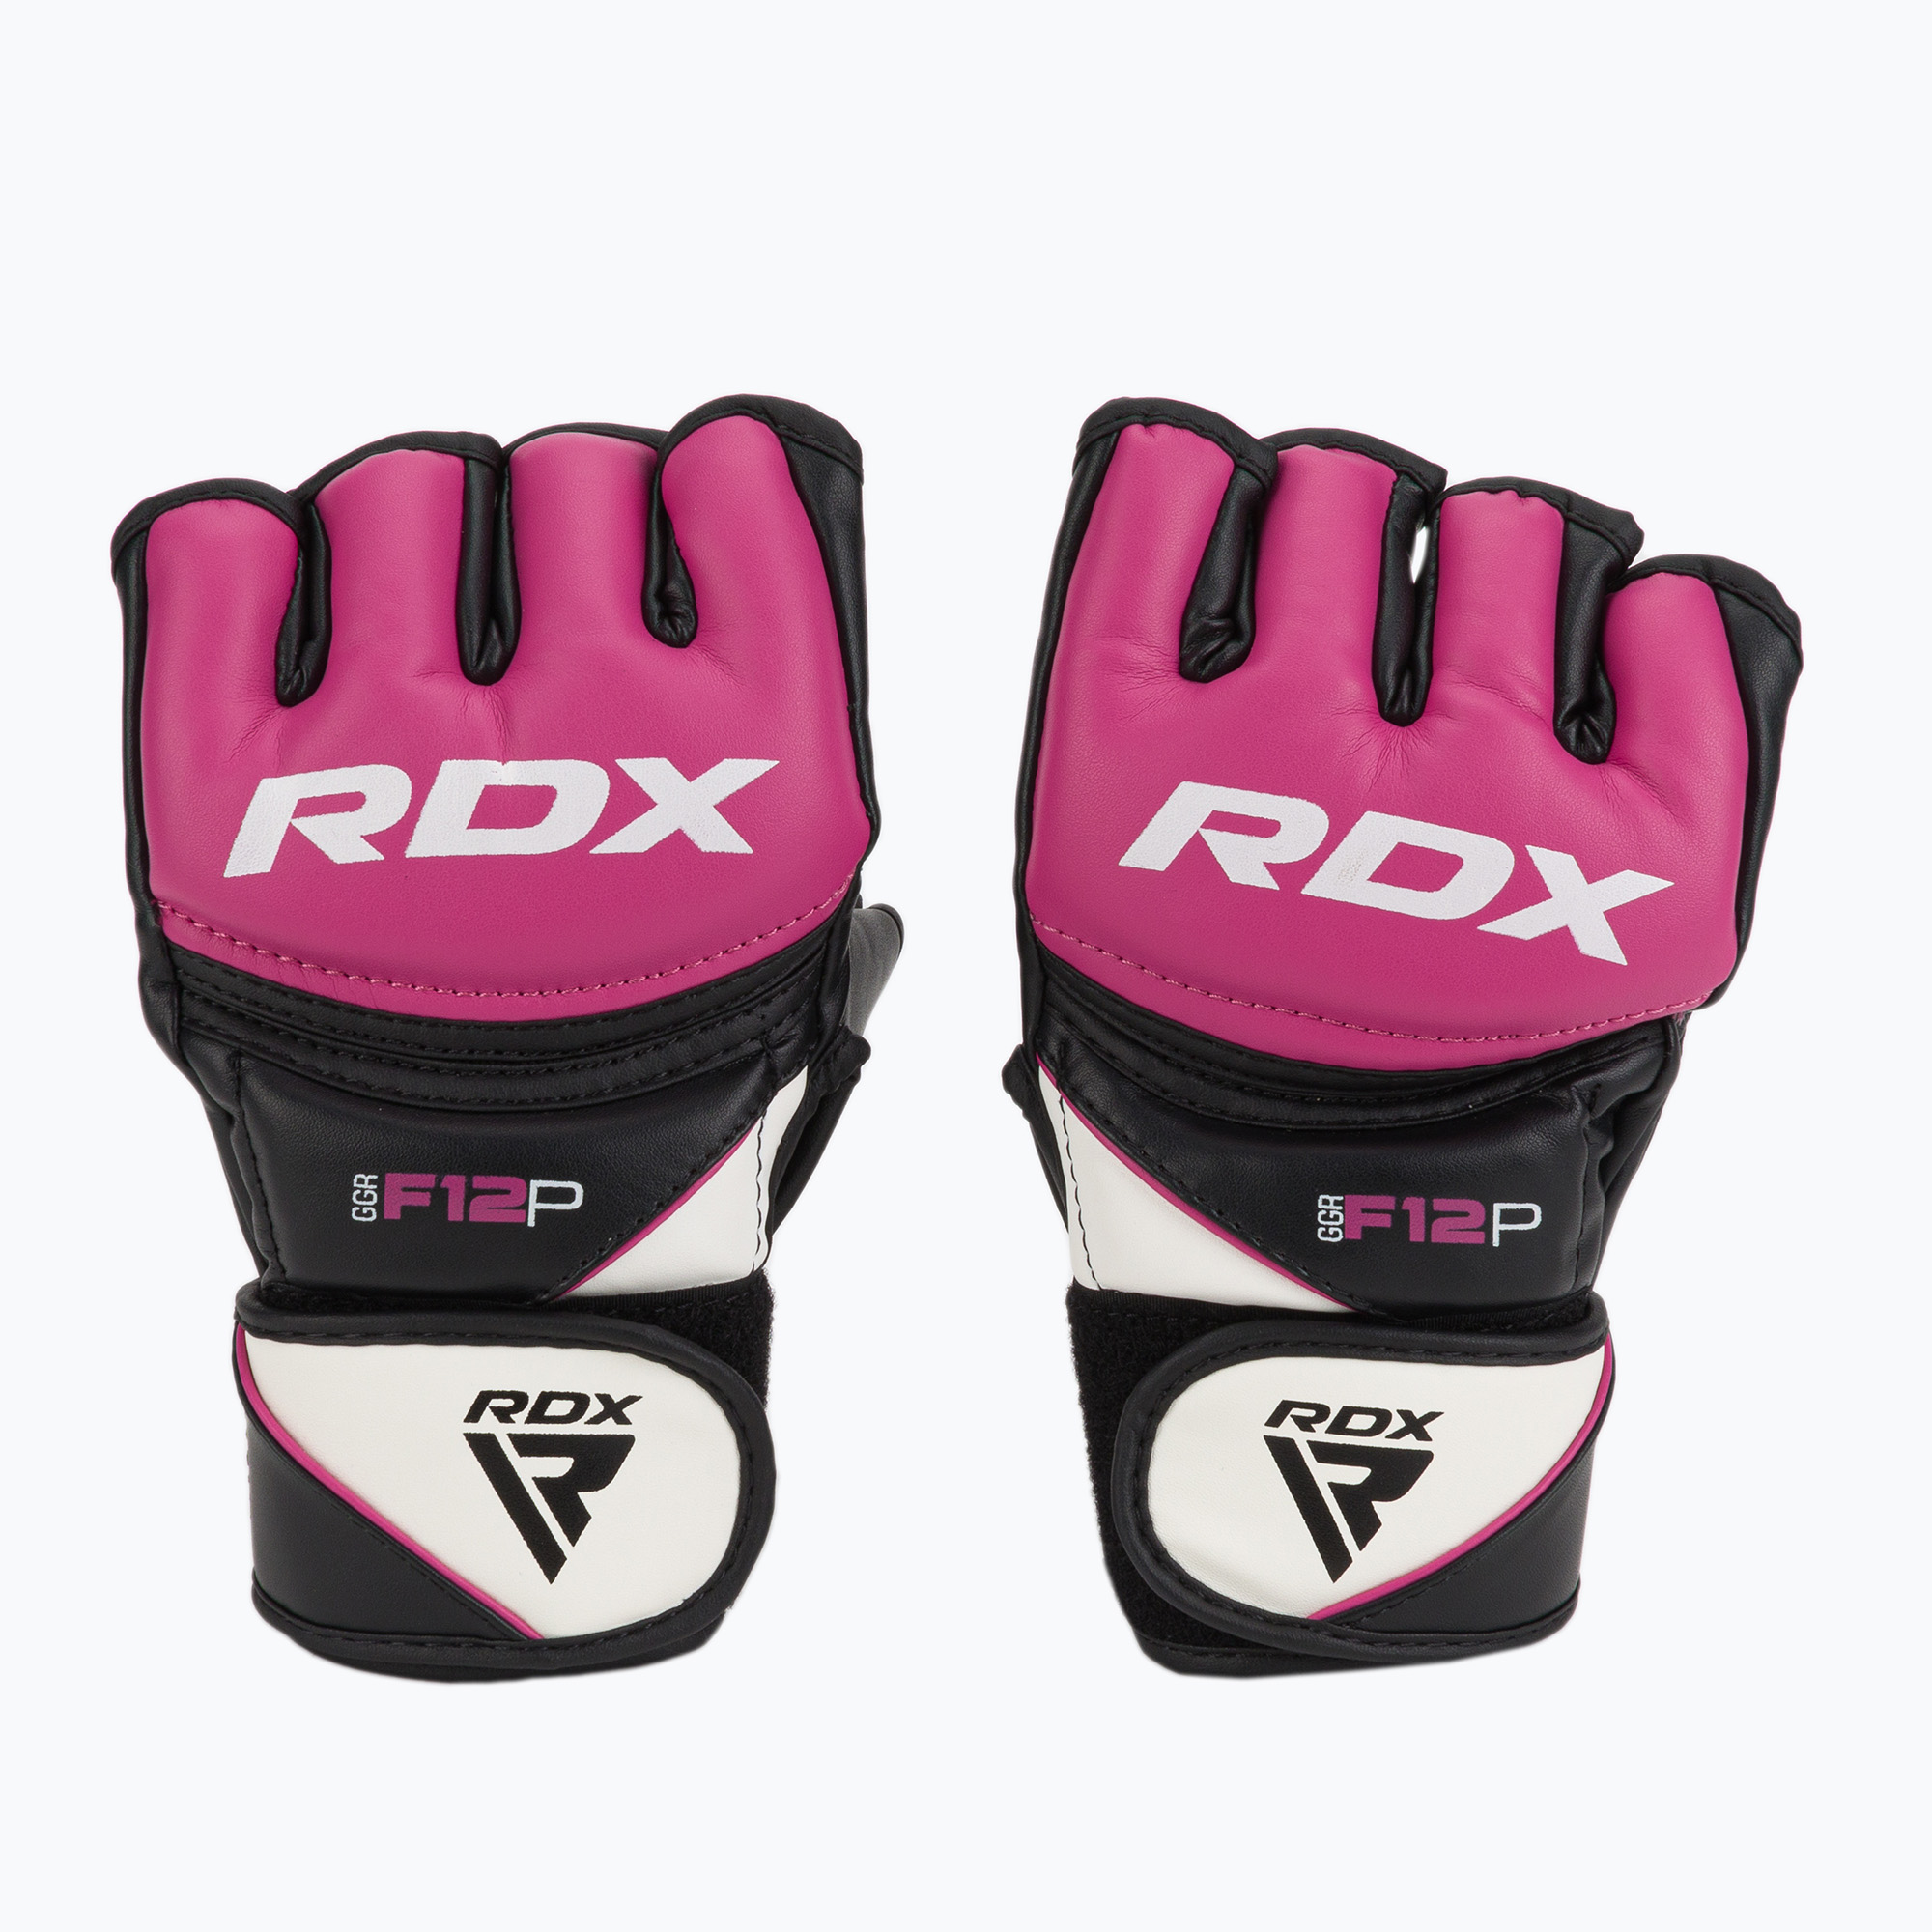 RDX Нов модел граплинг ръкавици розови GGRF-12P